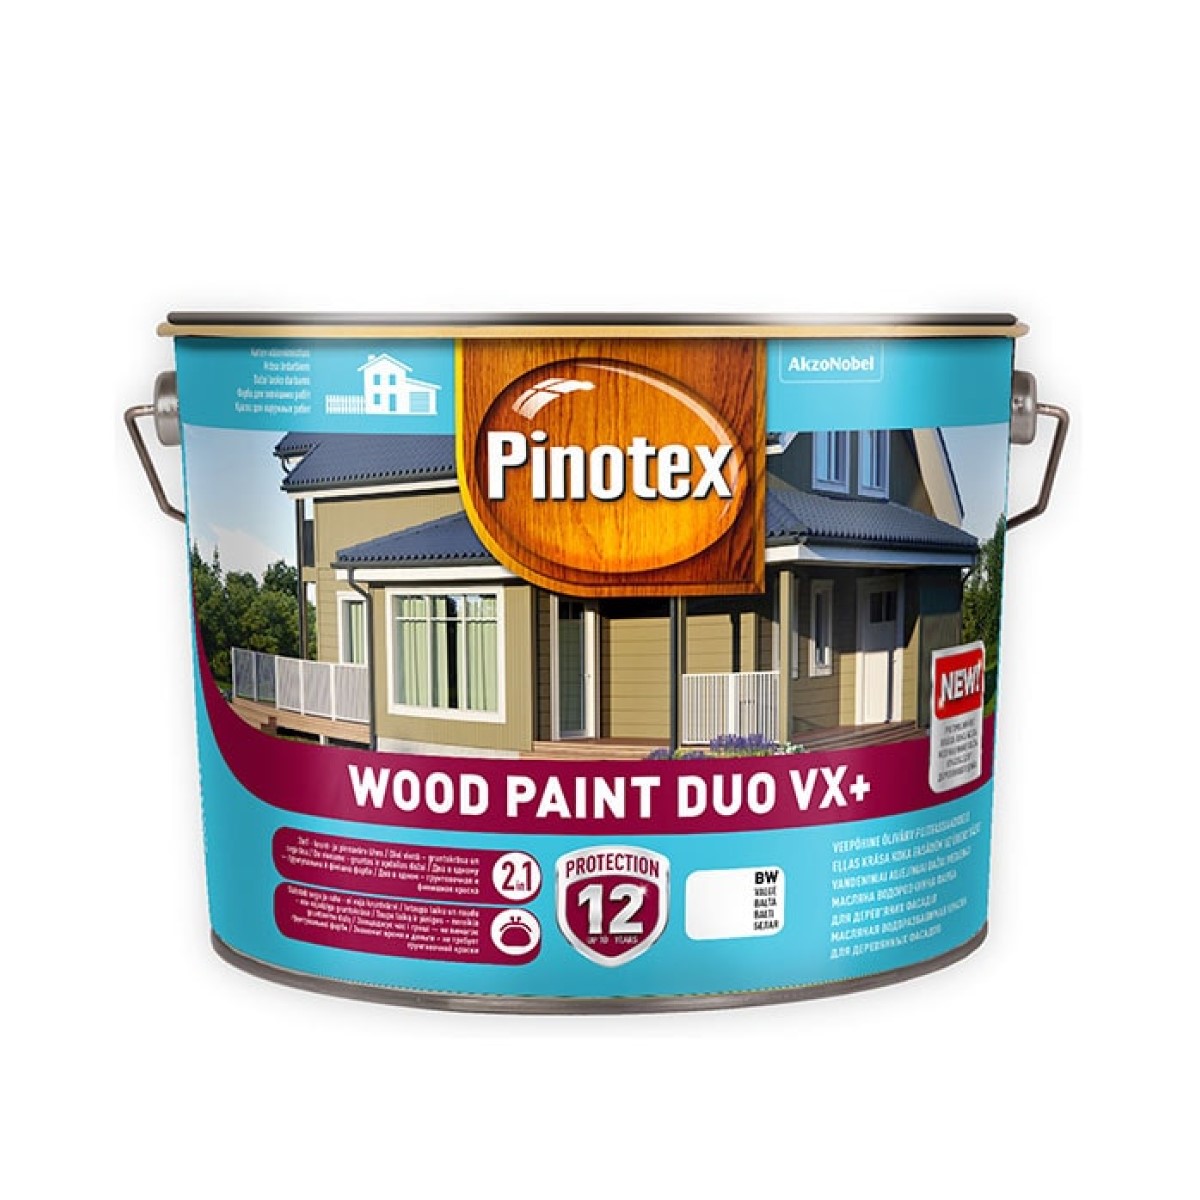 Pinotex Wood Paint Duo VX+ Ūdens bāzes eļļas krāsa koka fasādēm, pusmatēta BW 10L